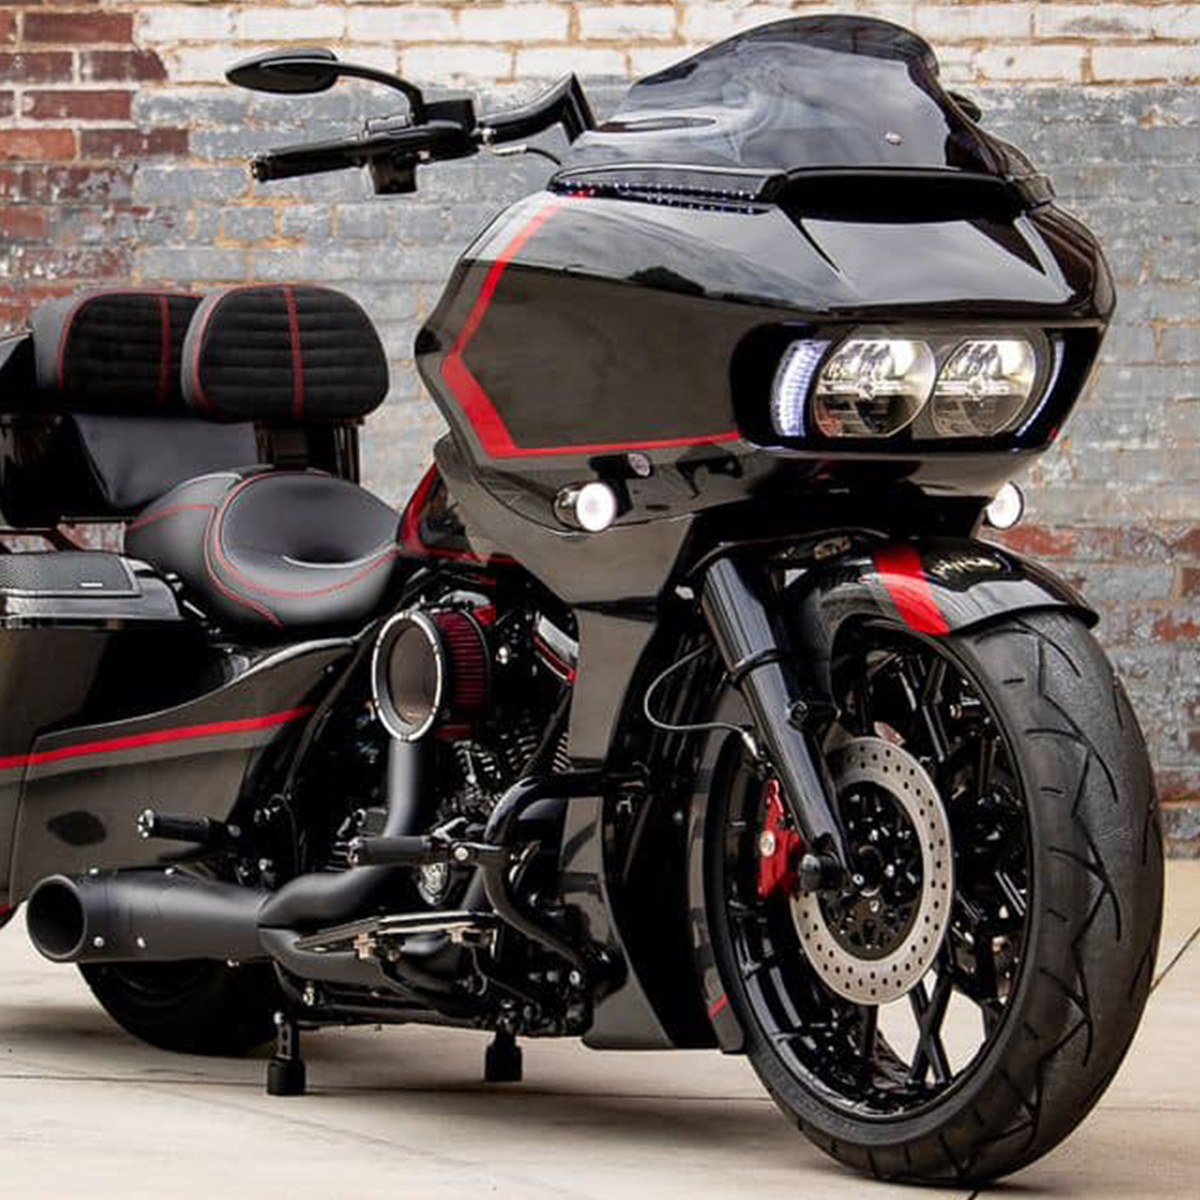 Harley Davidson Road Glide bagger with SMT's OG5 Prodigy fat tire wheels